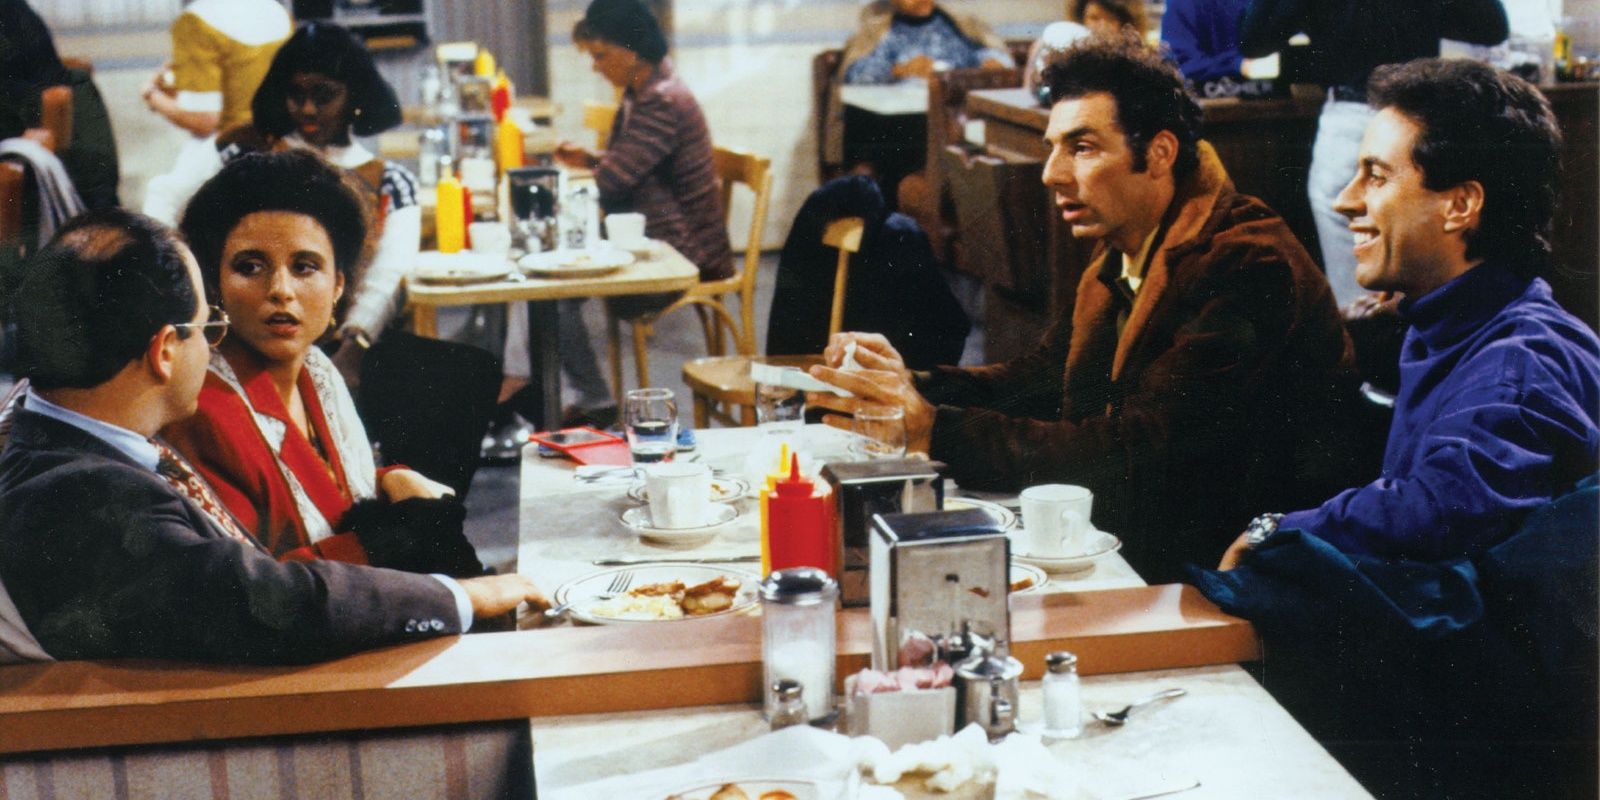 A friend hangout scene in Seinfeld